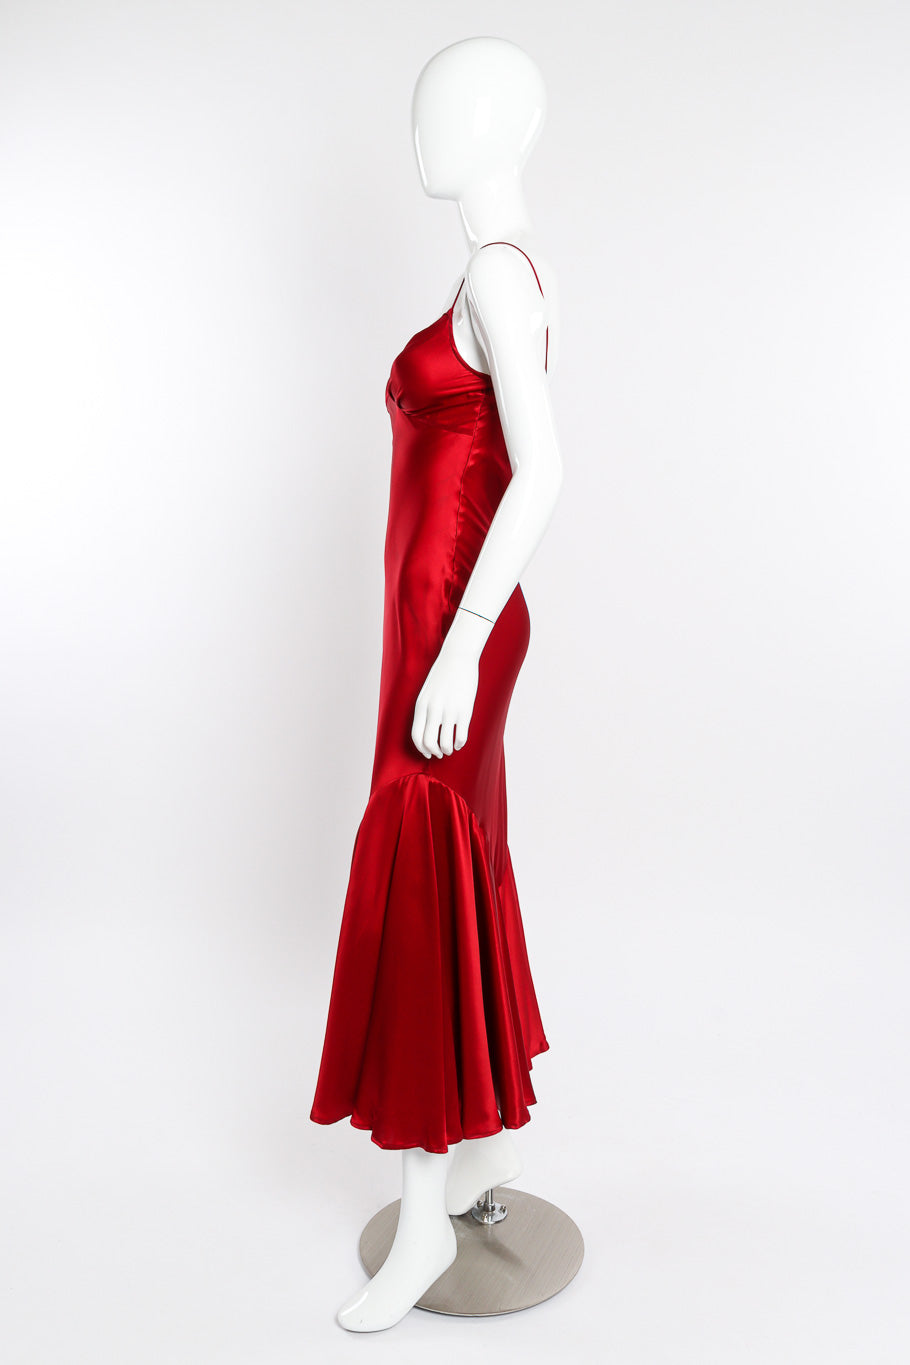 Satin slip dress by Bonnie Strauss on mannequin side @recessla